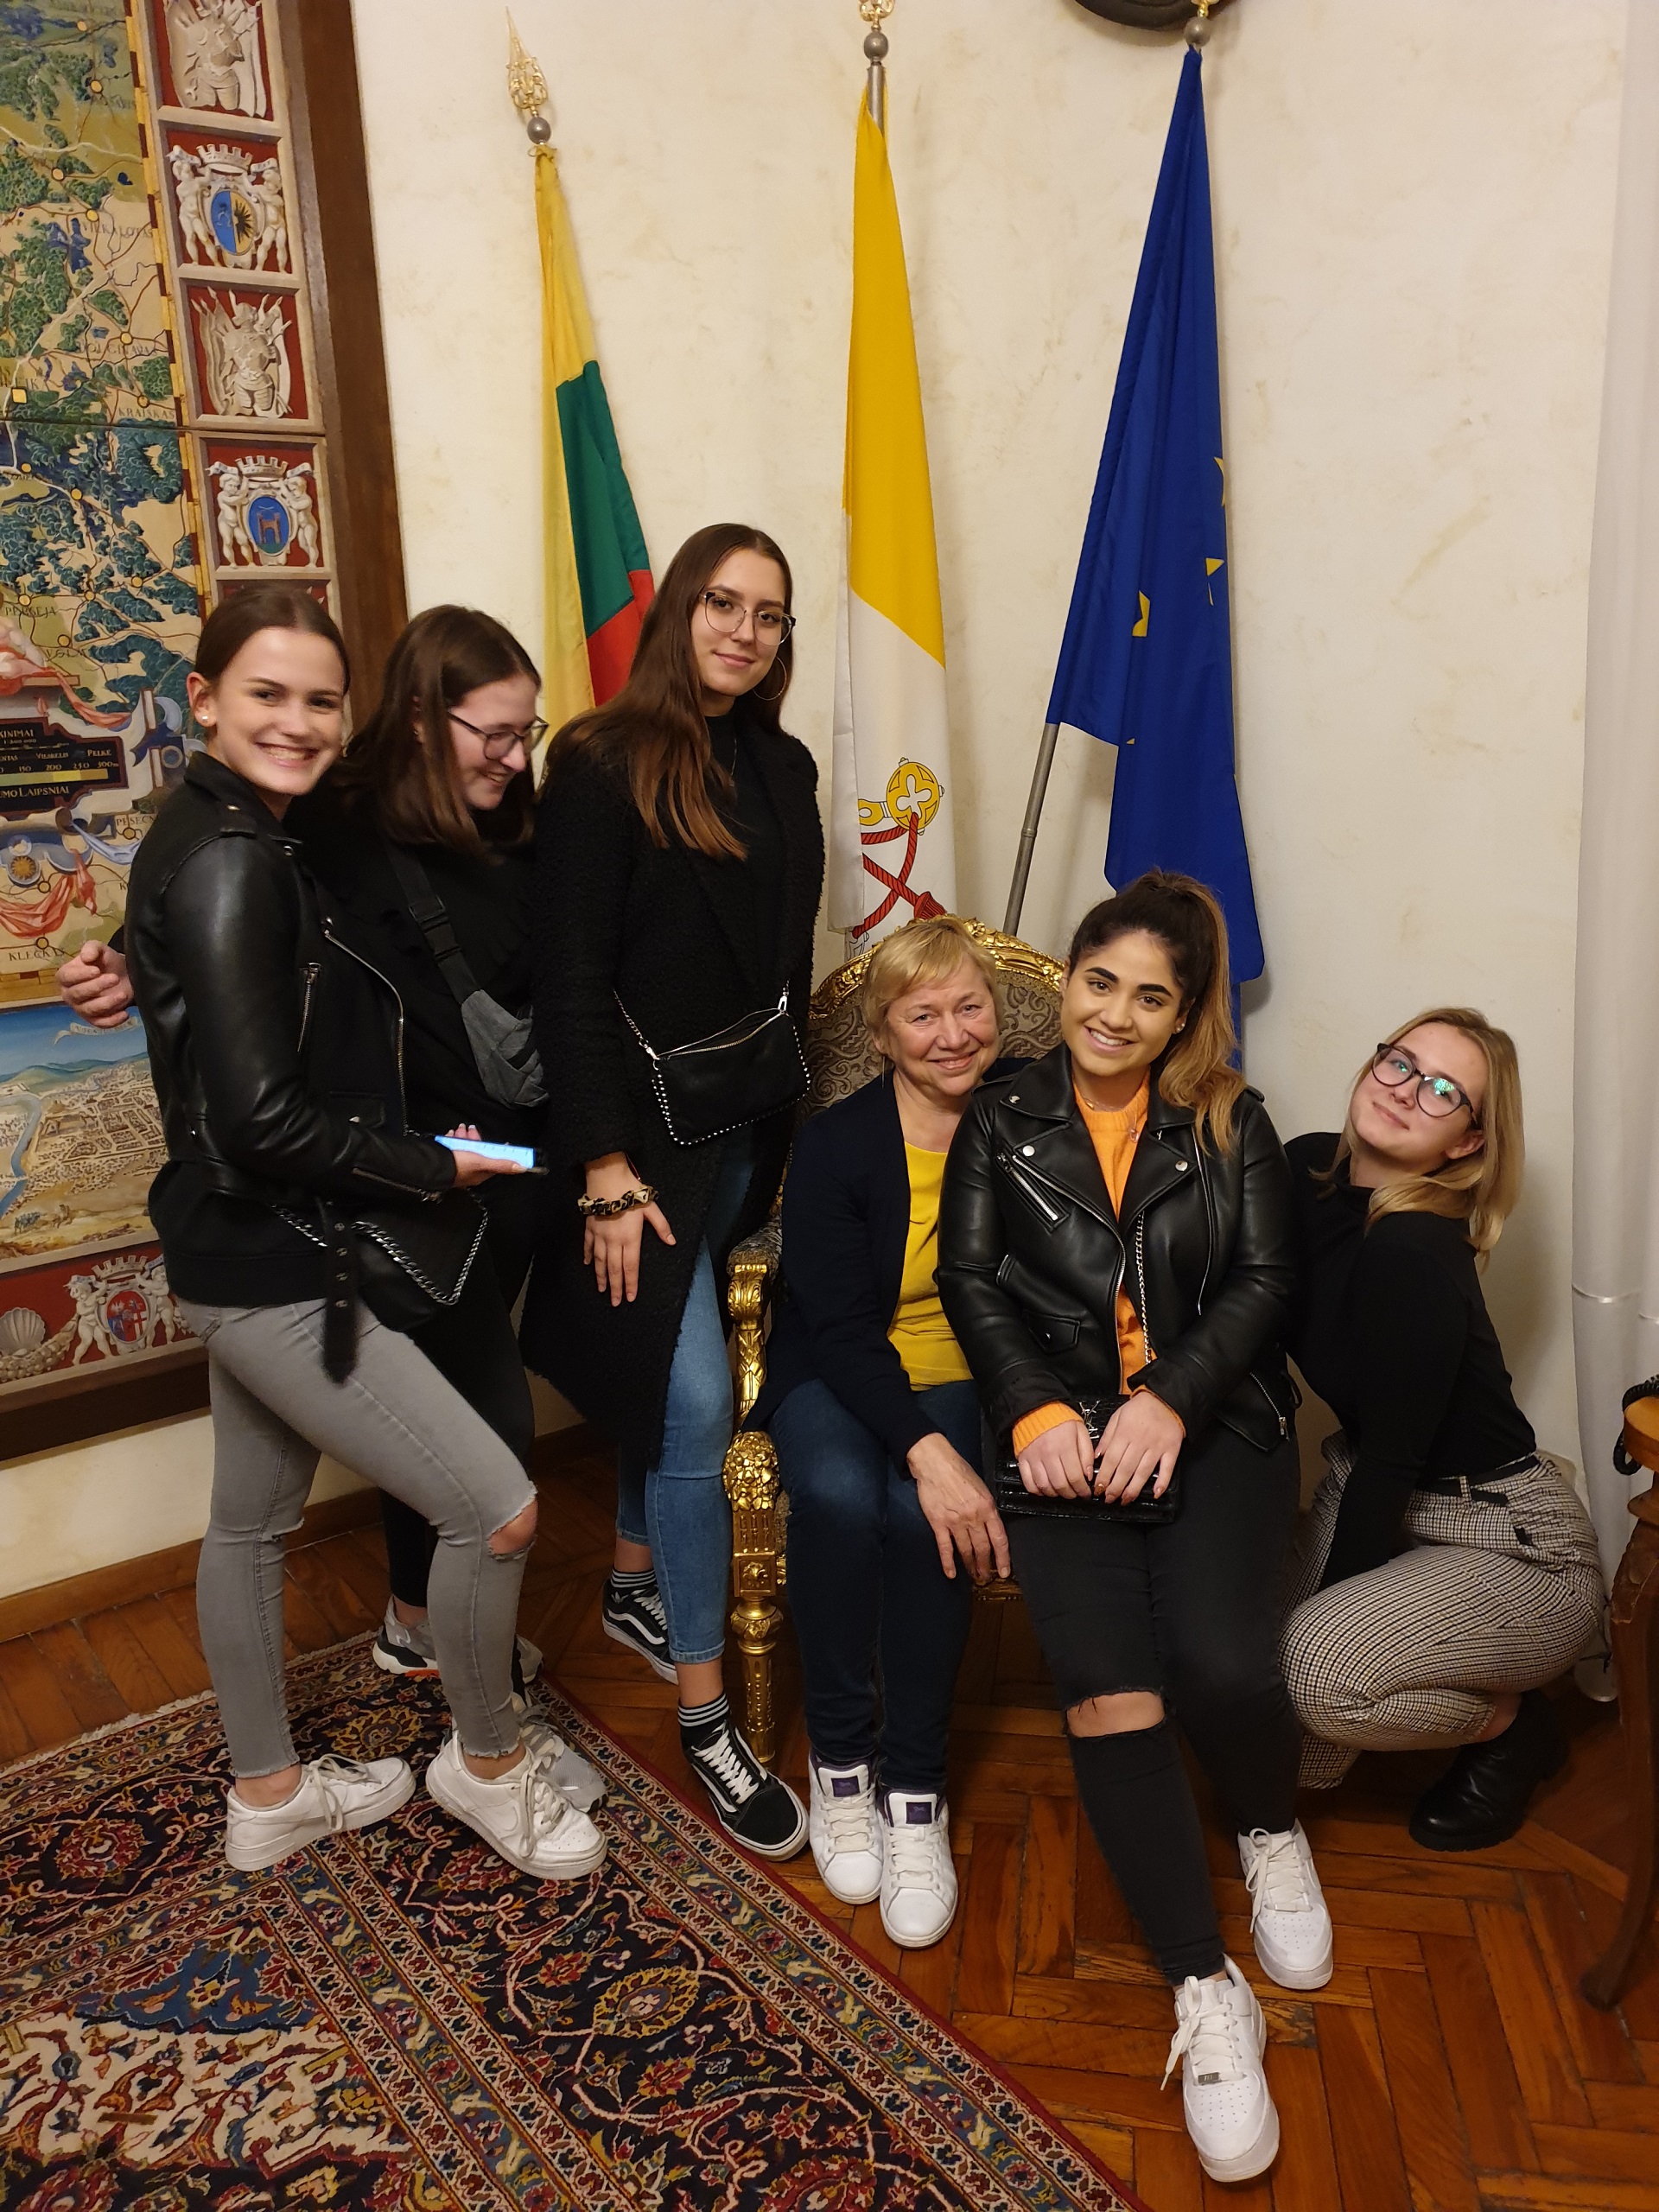 Eine Reise nach Rom: Radio Vatikan und das Päpstliche Litauische Kollegium St. Kazimir